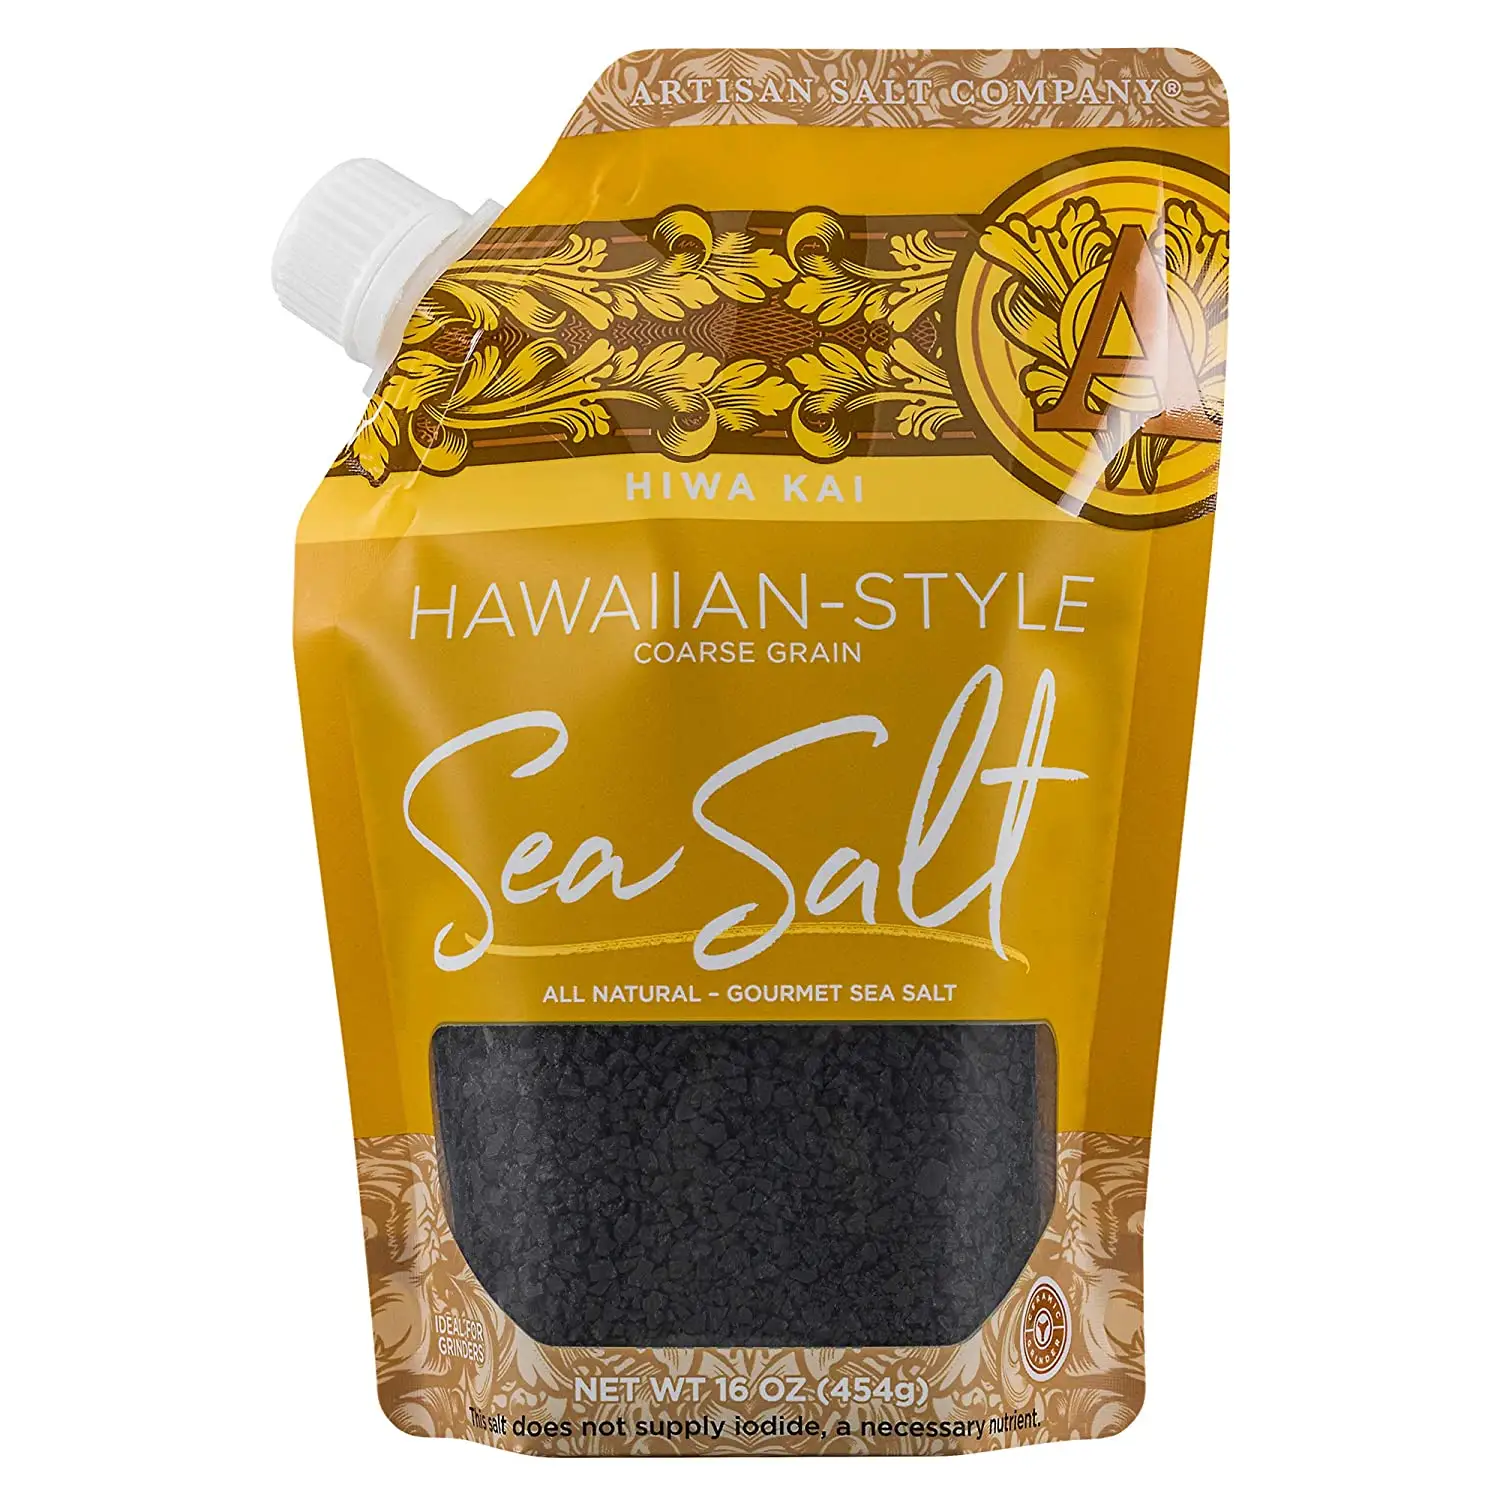 Органический пакет с логотипом завода, полностью натуральный пакет с носиком, 16 унций, Hiwa Kai, черная морская соль в гавайском стиле, грубое зерно